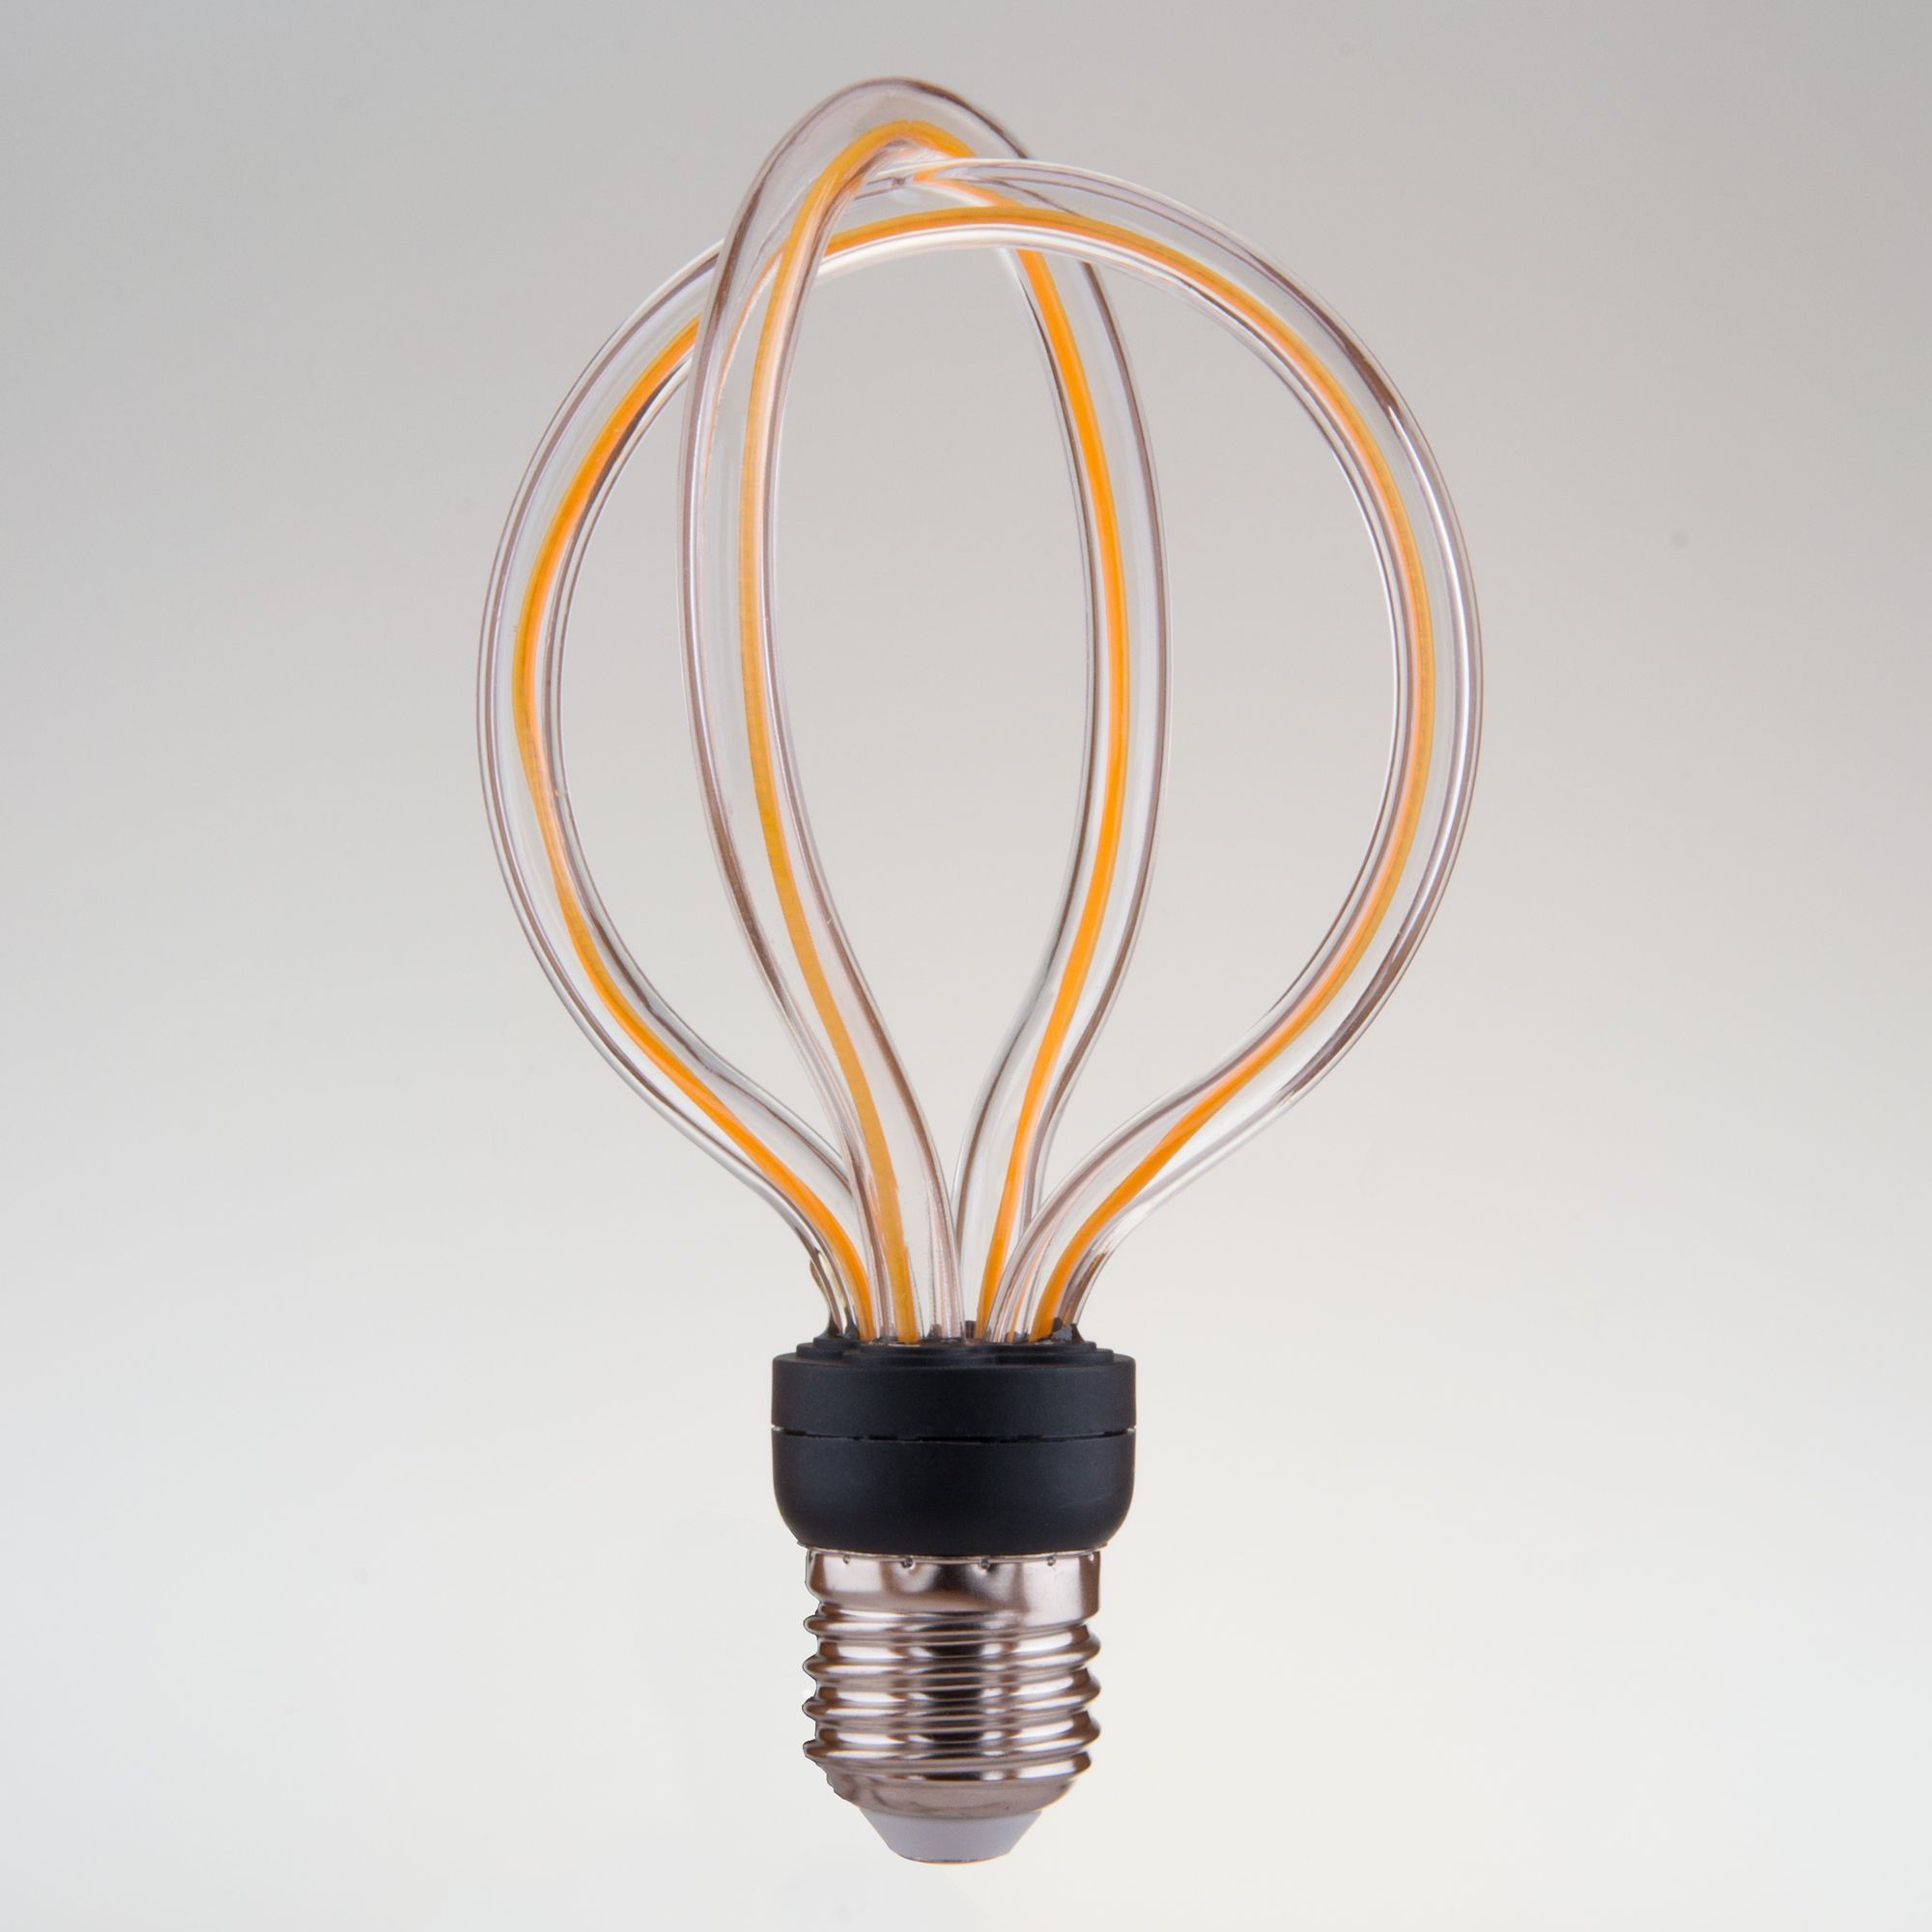 Филаментная светодиодная лампа Art filament 8W 2400K E27 Elektrostandard Art filament BL151. Фото 2